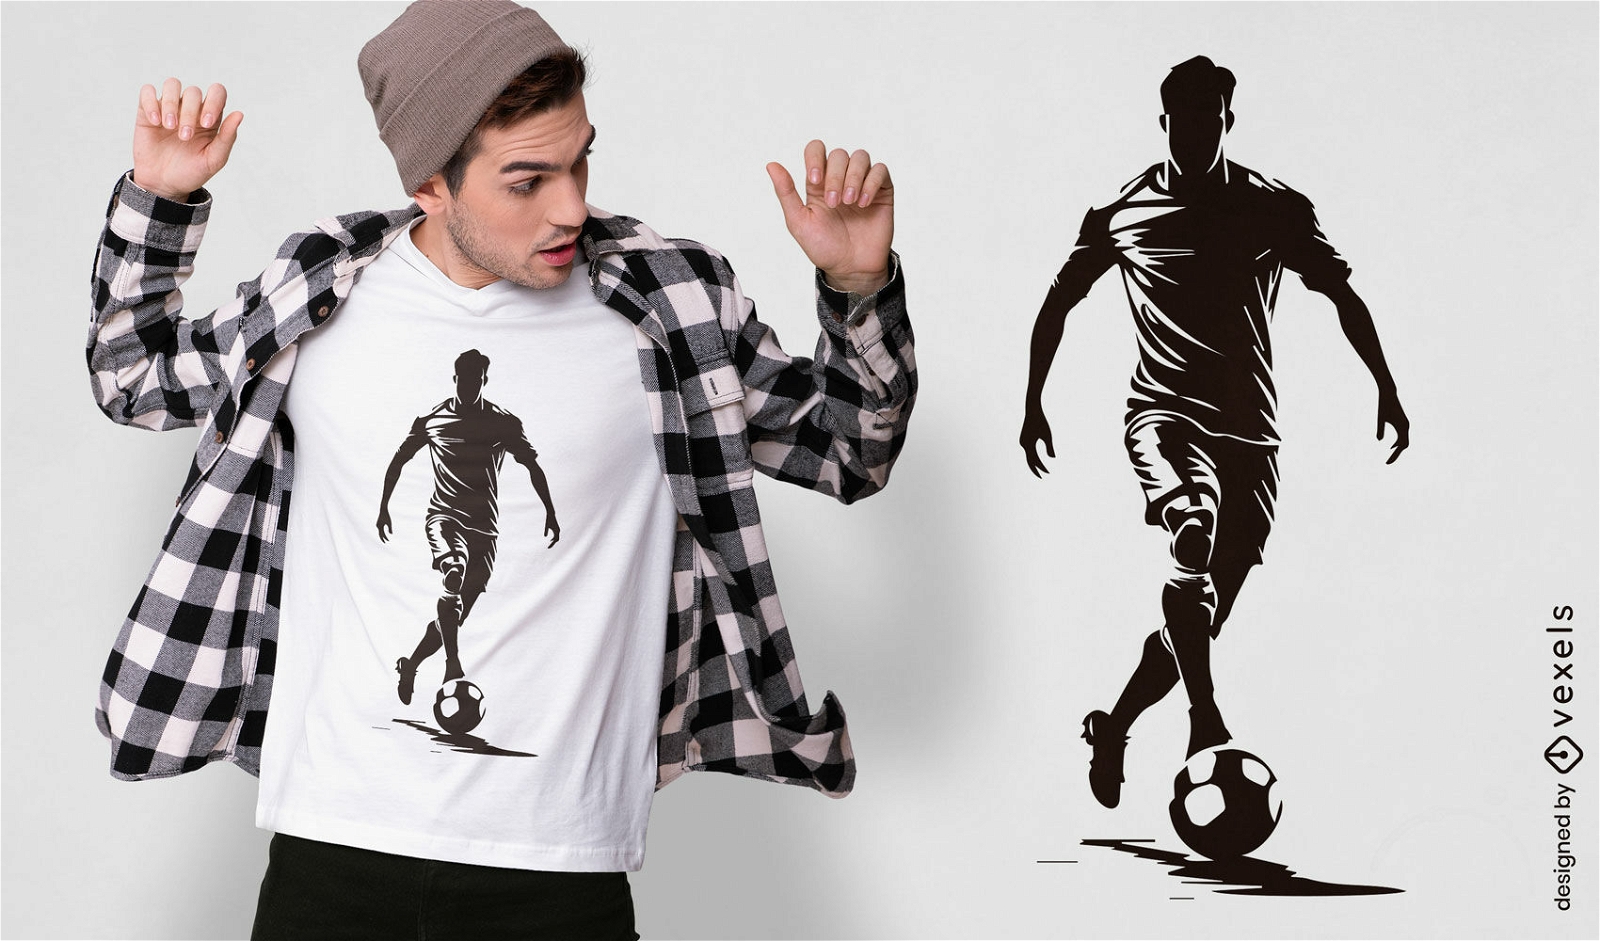 Diseño de camiseta de acción de jugador de fútbol.